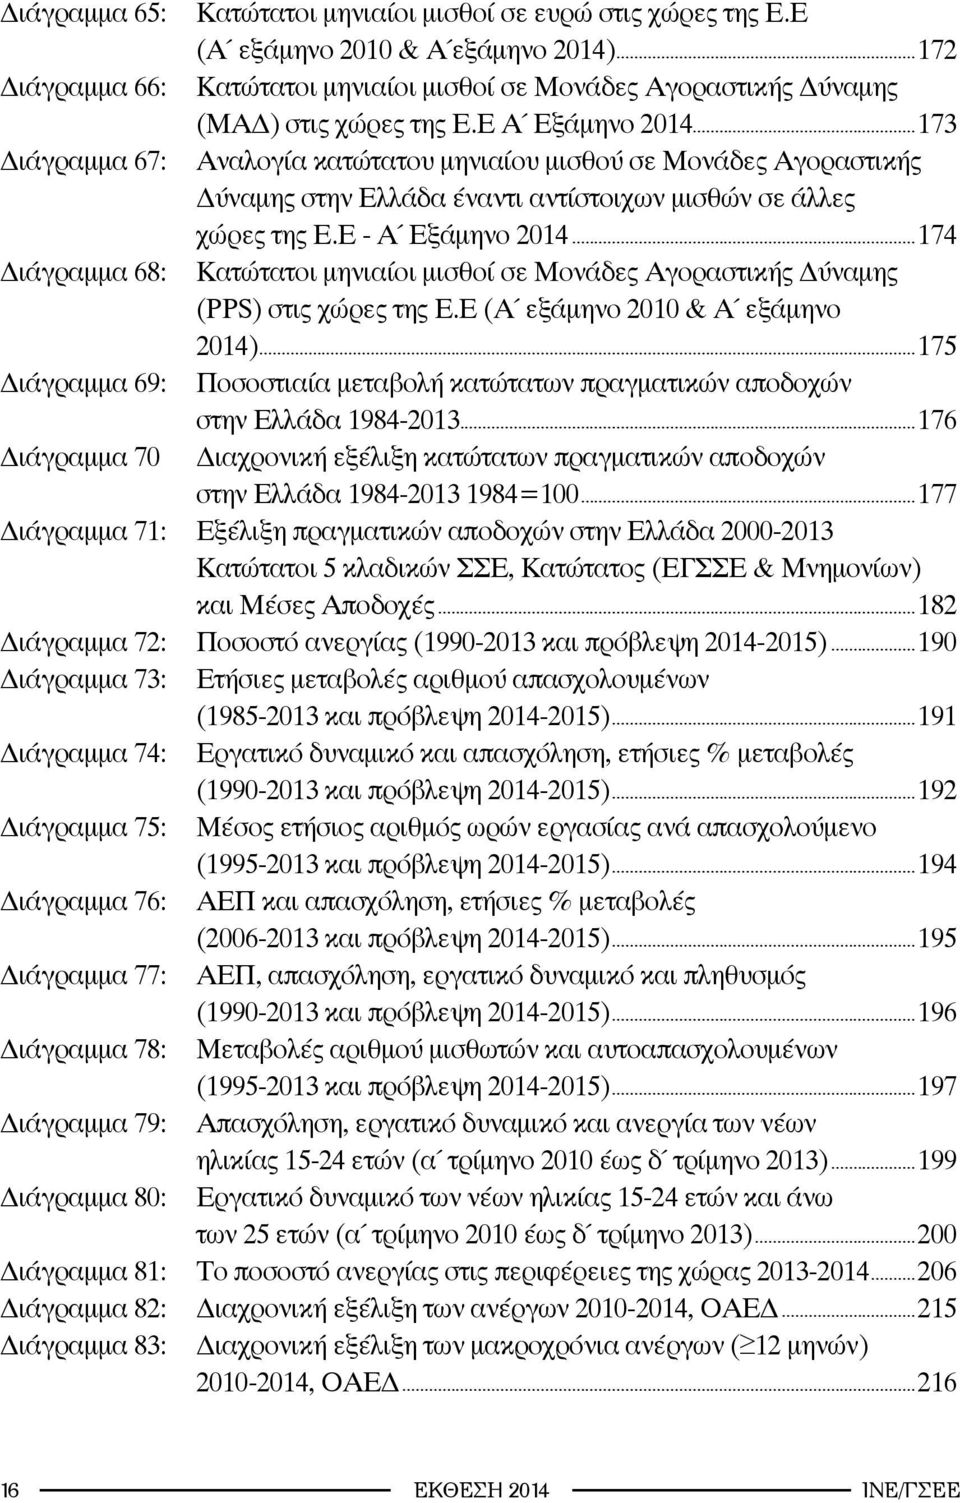 ..174 Διάγραμμα 68: Κατώτατοι μηνιαίοι μισθοί σε Μονάδες Αγοραστικής Δύναμης (PPS) στις χώρες της Ε.Ε (Α εξάμηνο 2010 & Α εξάμηνο 2014).